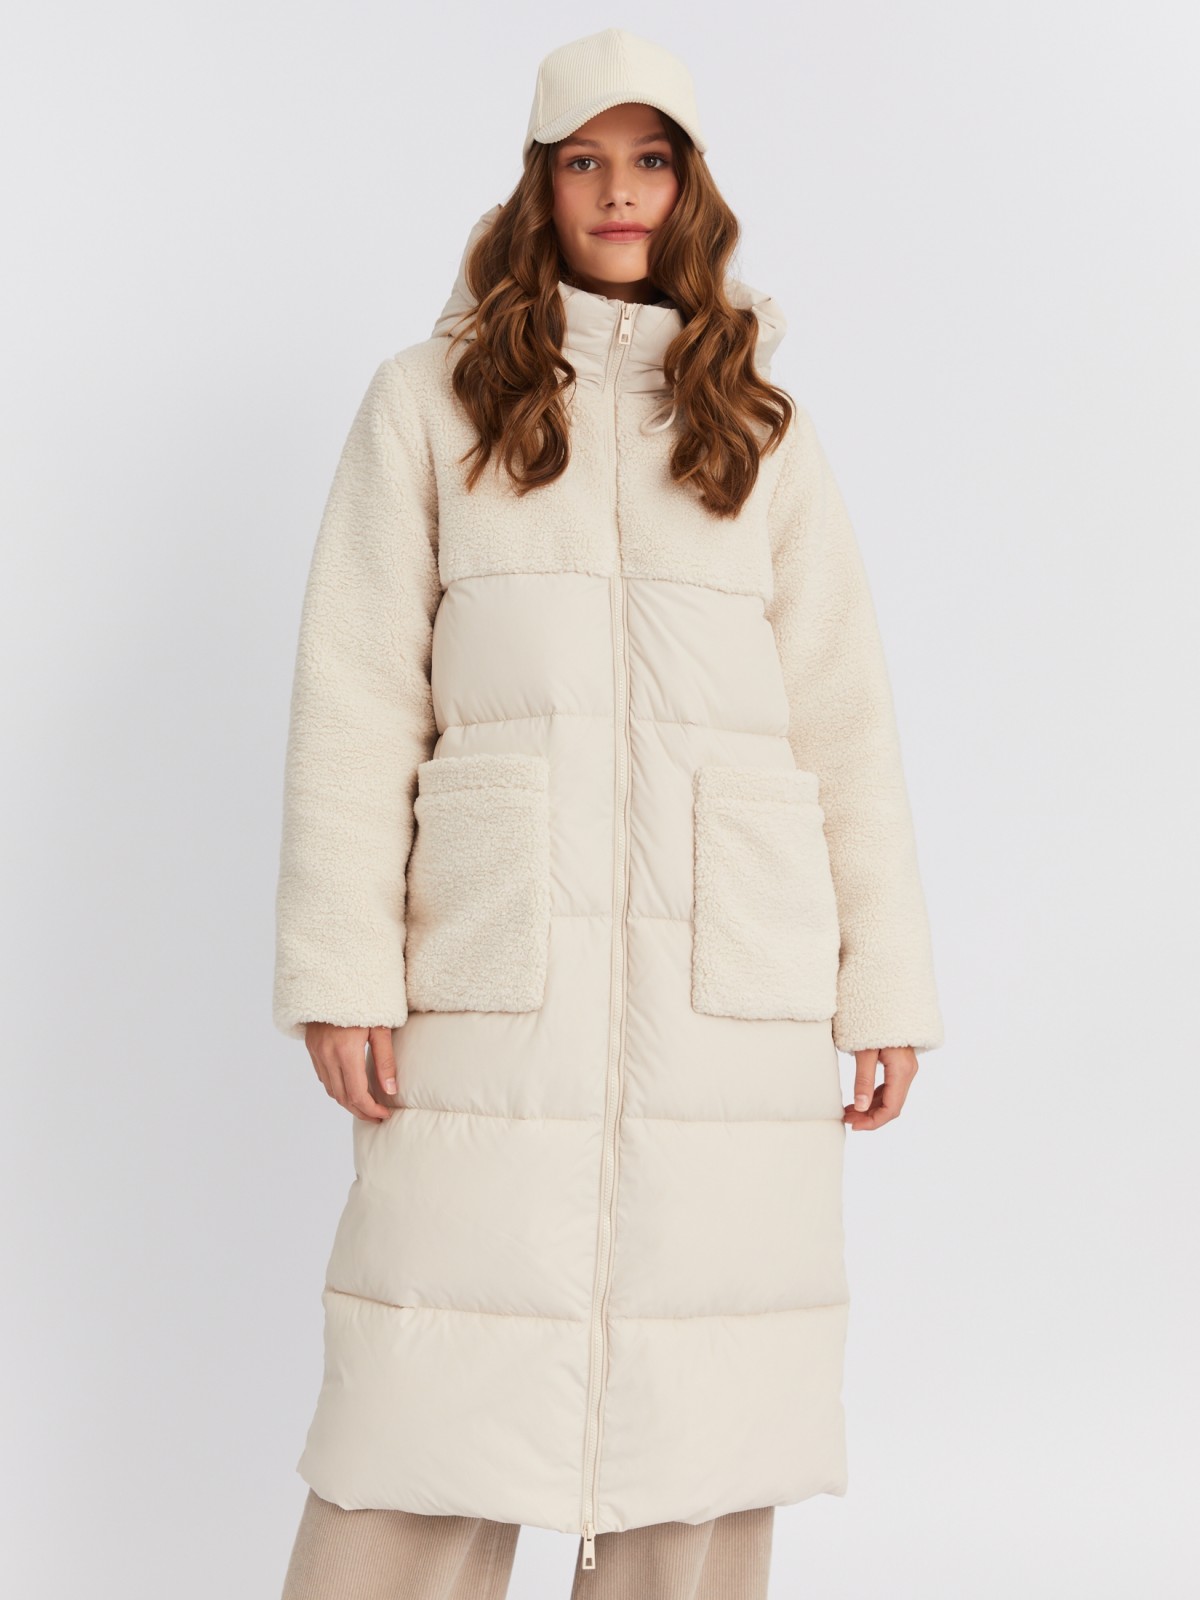 Тёплая куртка-пальто с отделкой из экомеха и капюшоном zolla 023425212154, цвет молоко, размер M - фото 4